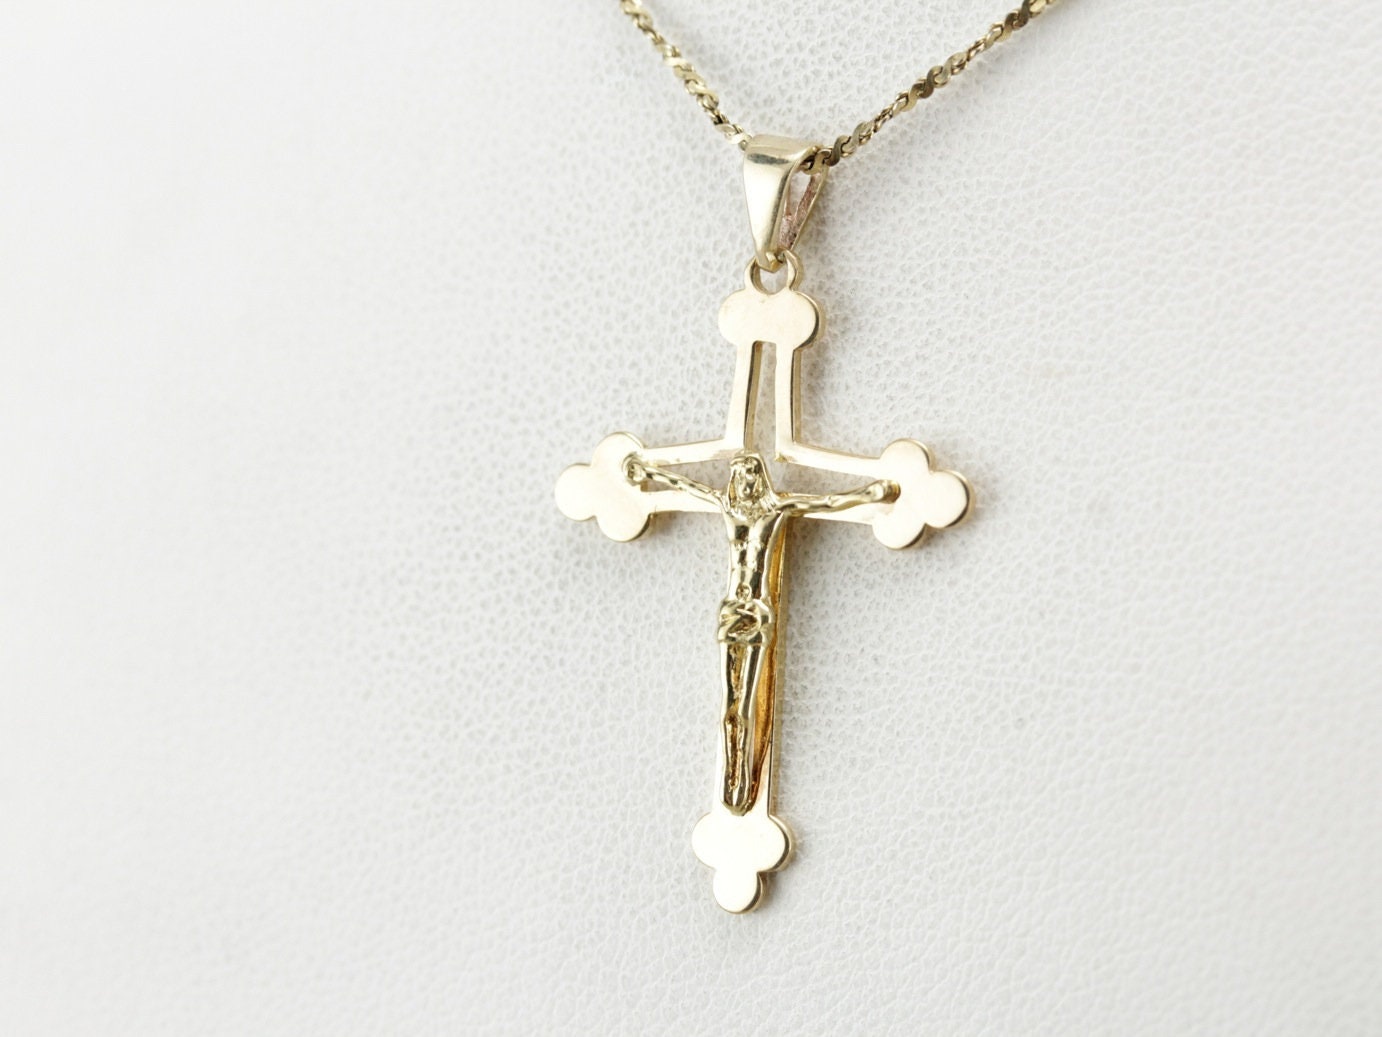 Unisex Crucifix Pendant Yellow Gold Crucifix Religious Gift | Etsy